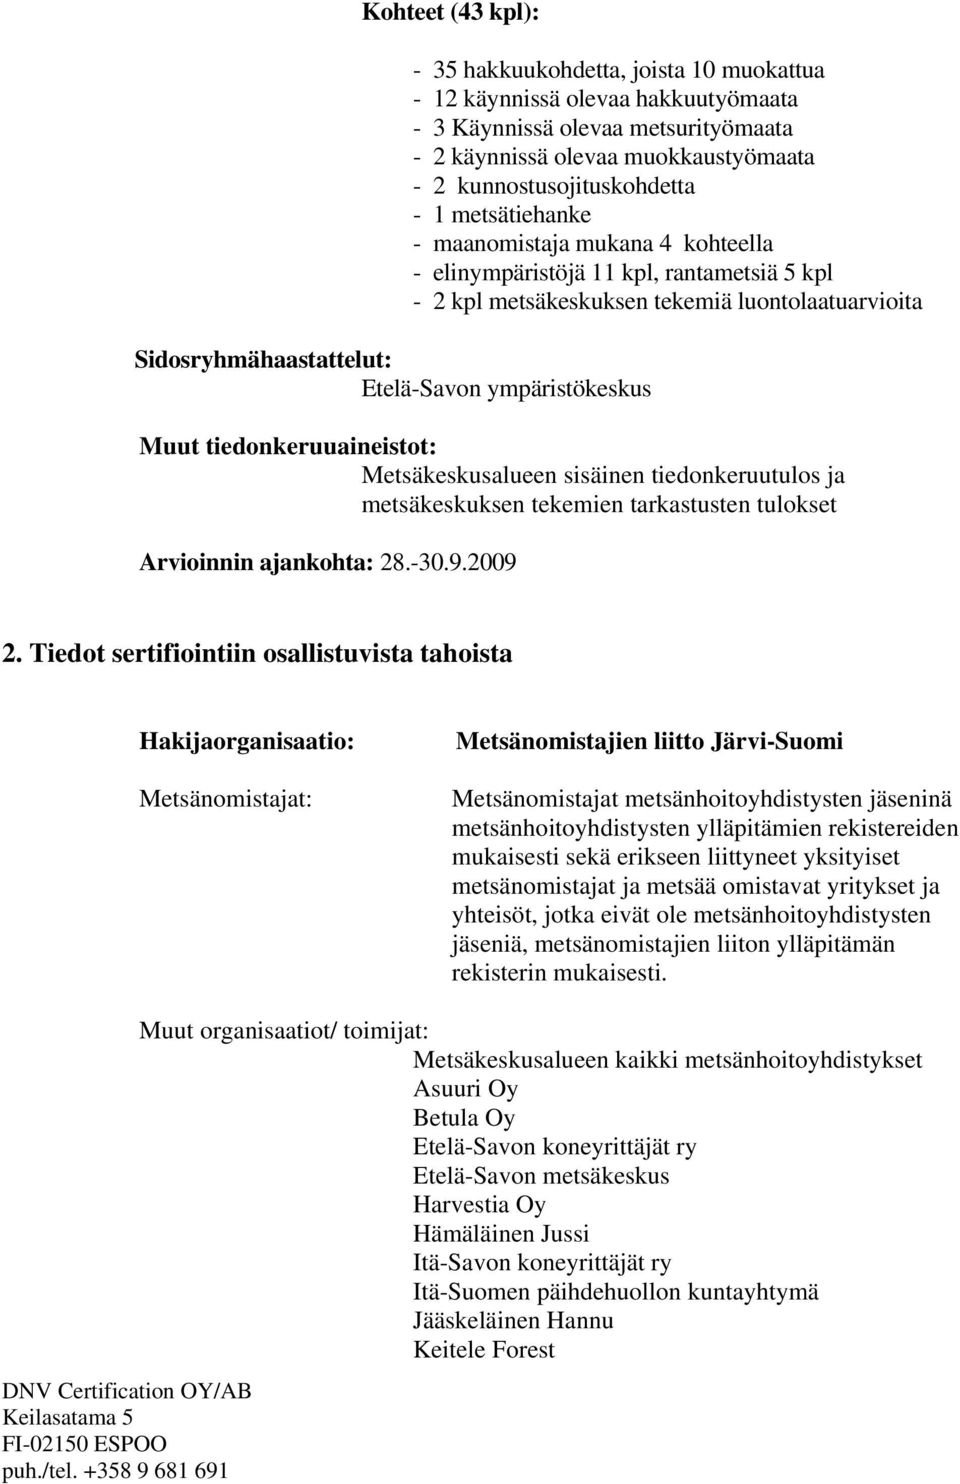 Muut tiedonkeruuaineistot: Metsäkeskusalueen sisäinen tiedonkeruutulos ja metsäkeskuksen tekemien tarkastusten tulokset Arvioinnin ajankohta: 28.-30.9.2009 2.